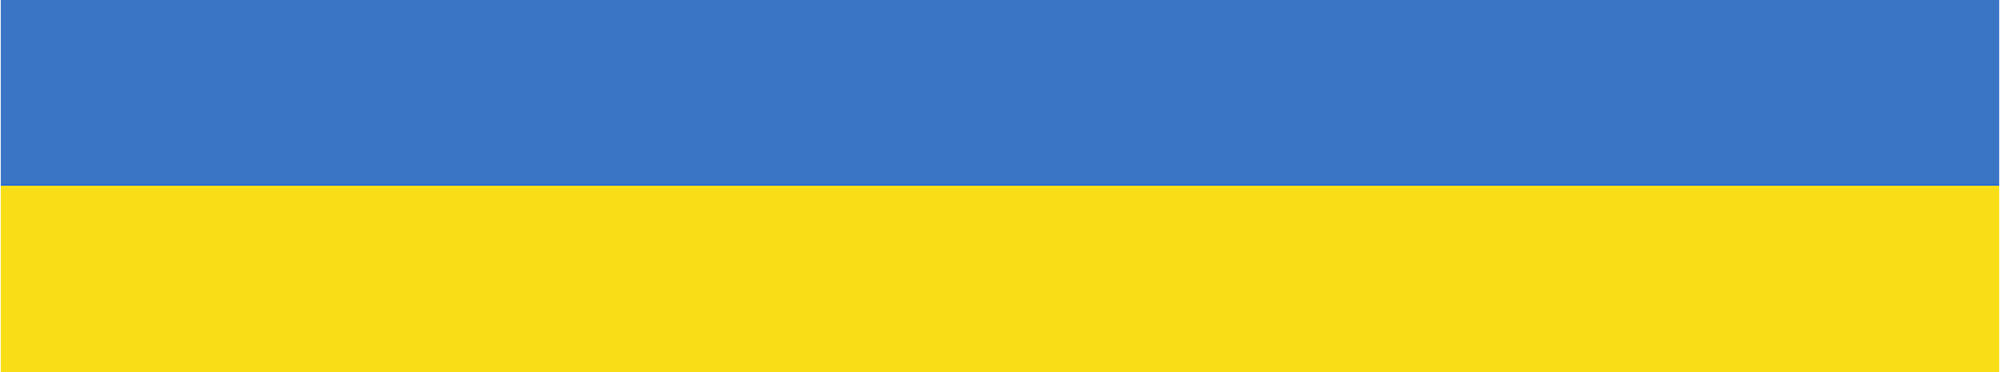 Symbolbild (blau-gelb) in Anlehnung an die Farben der Ukraine.